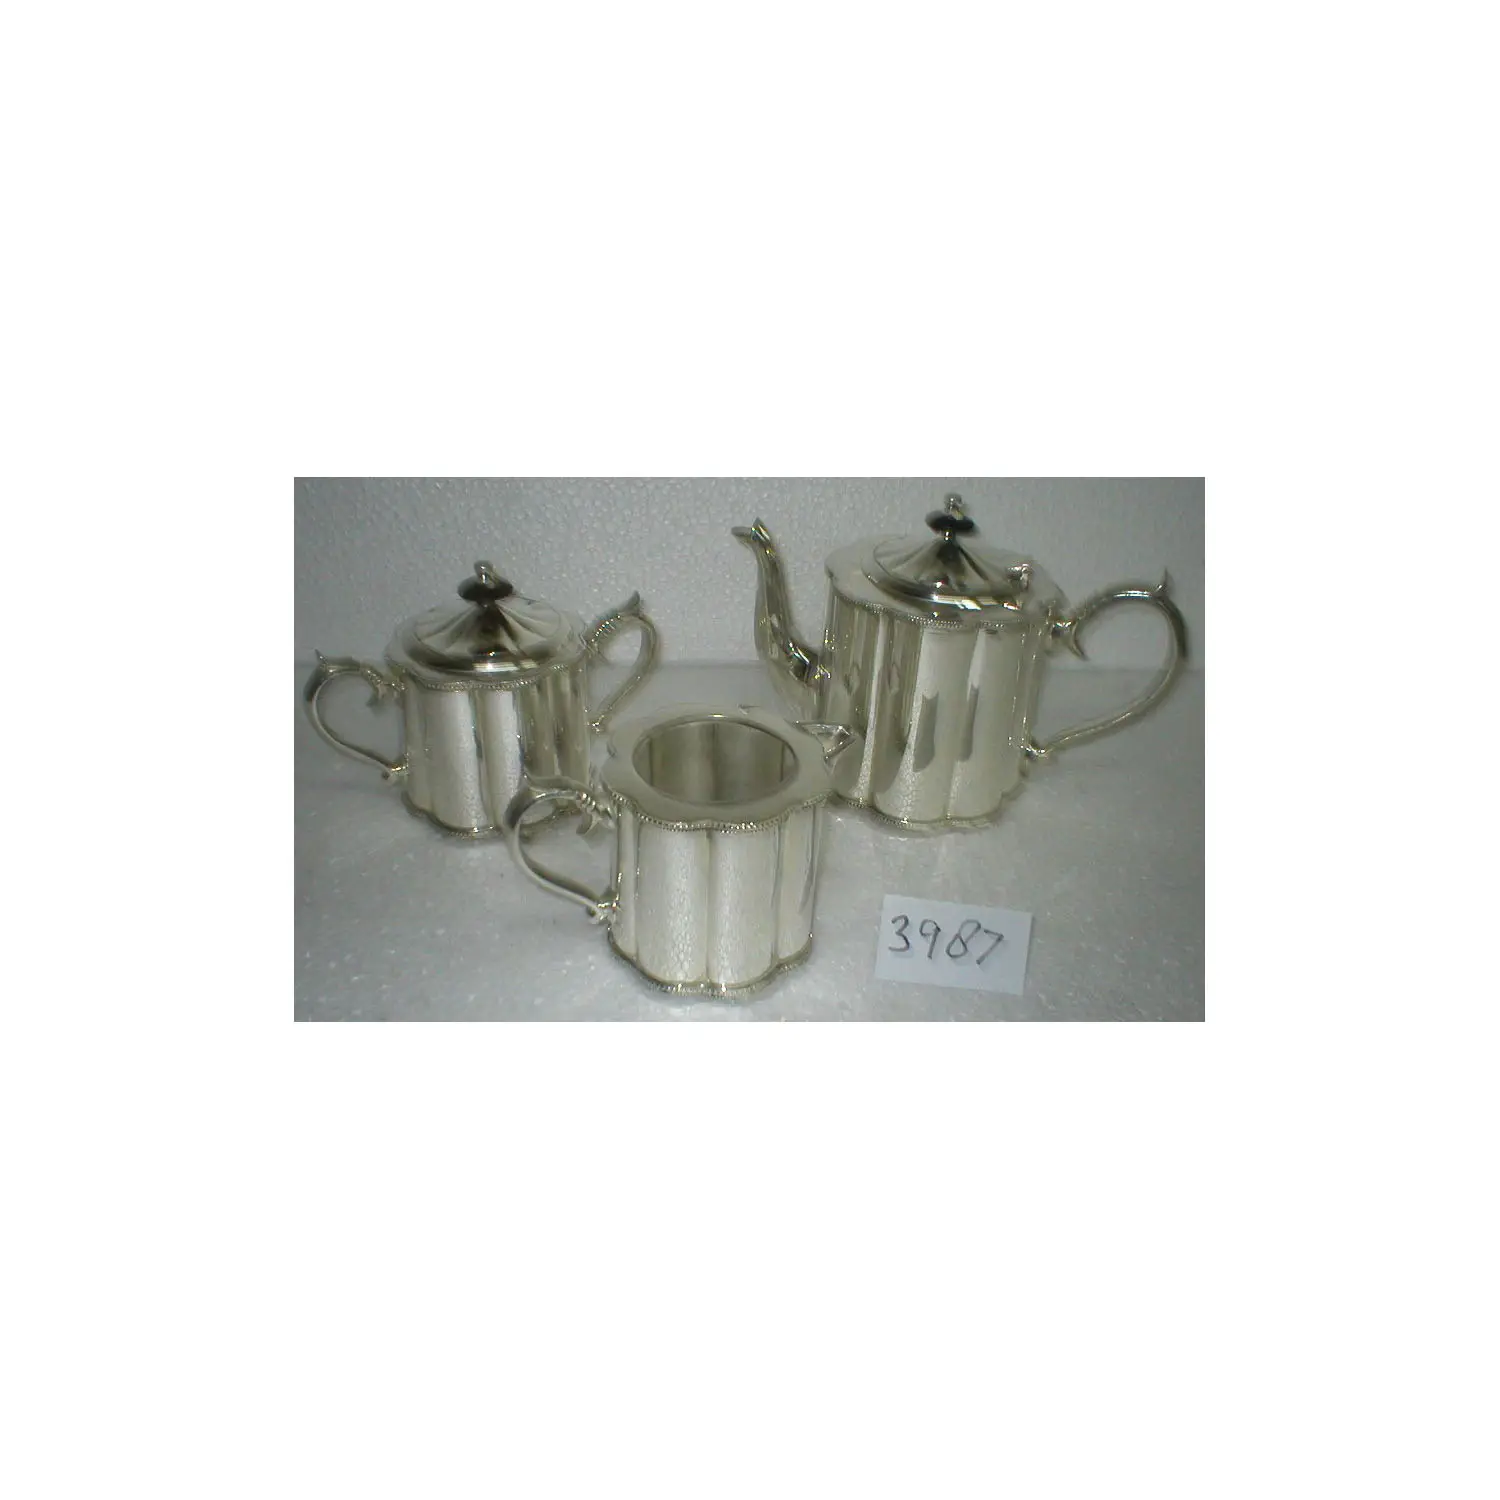 Modernes Design Silberbeschichtung Teeservice Premium Qualität Metall Teekanne Set für Küche und Tisch